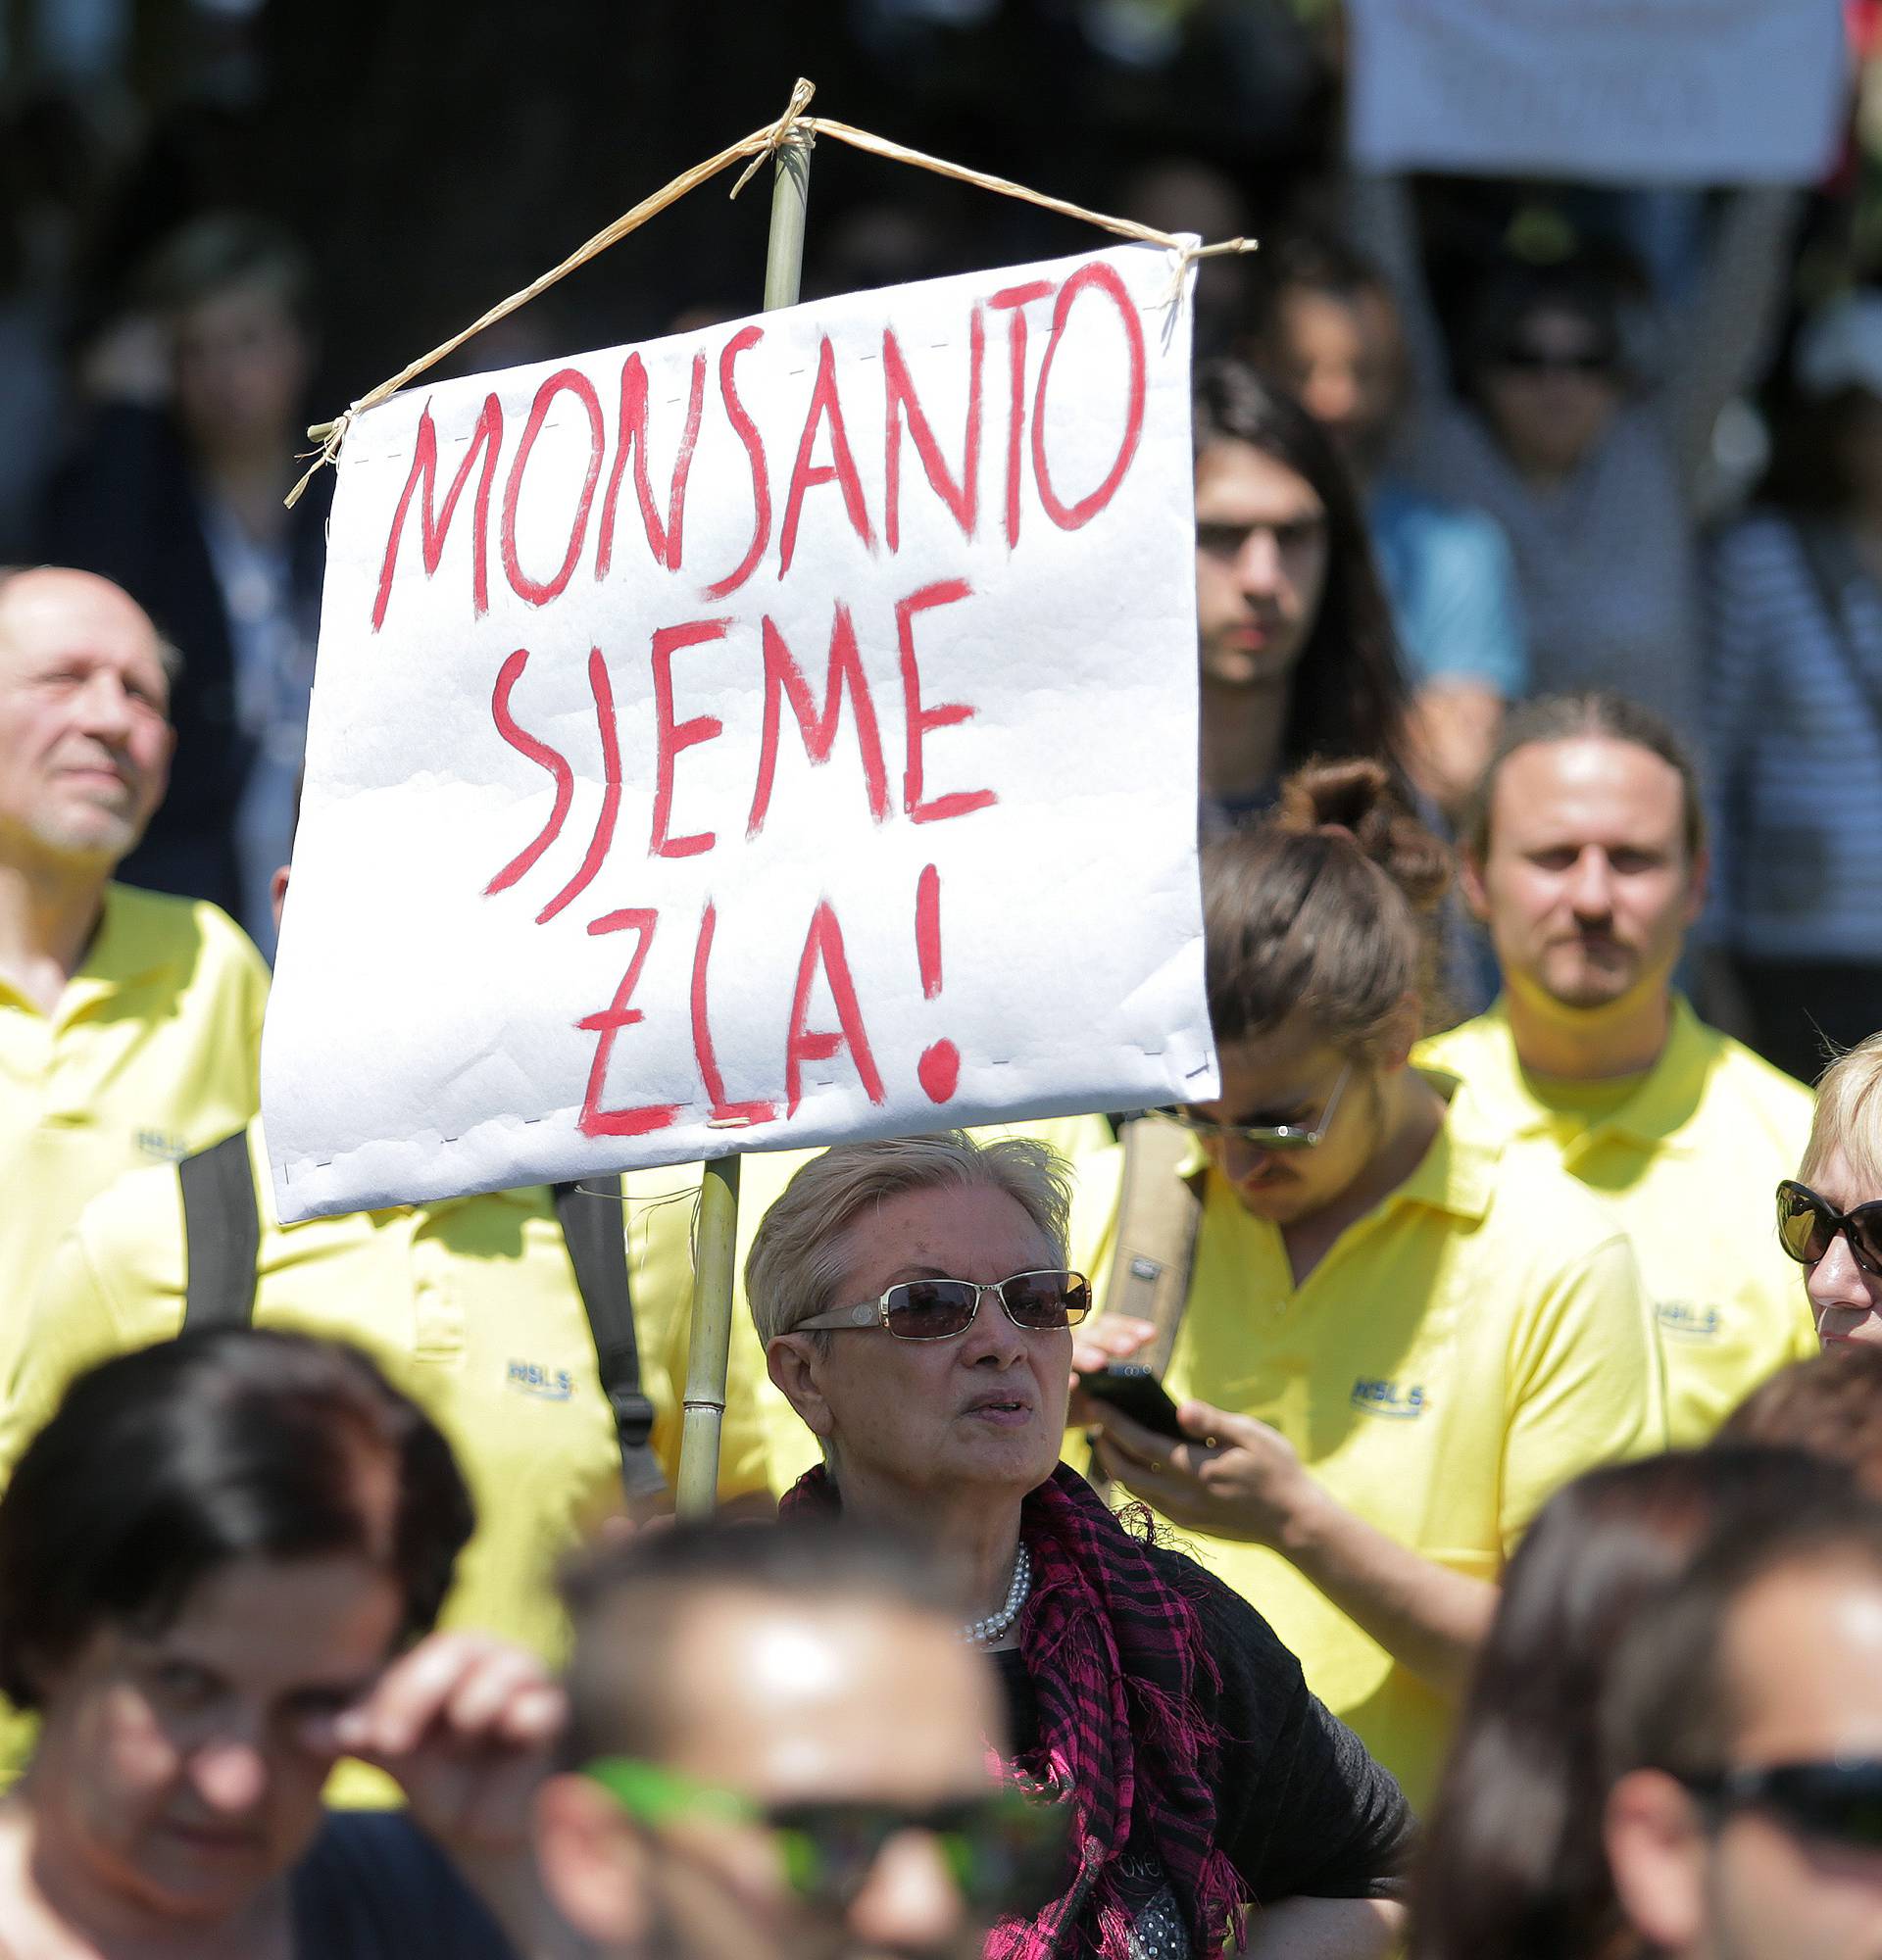 Međunarodni prosvjed protiv Monsanta bio je bez incidenata